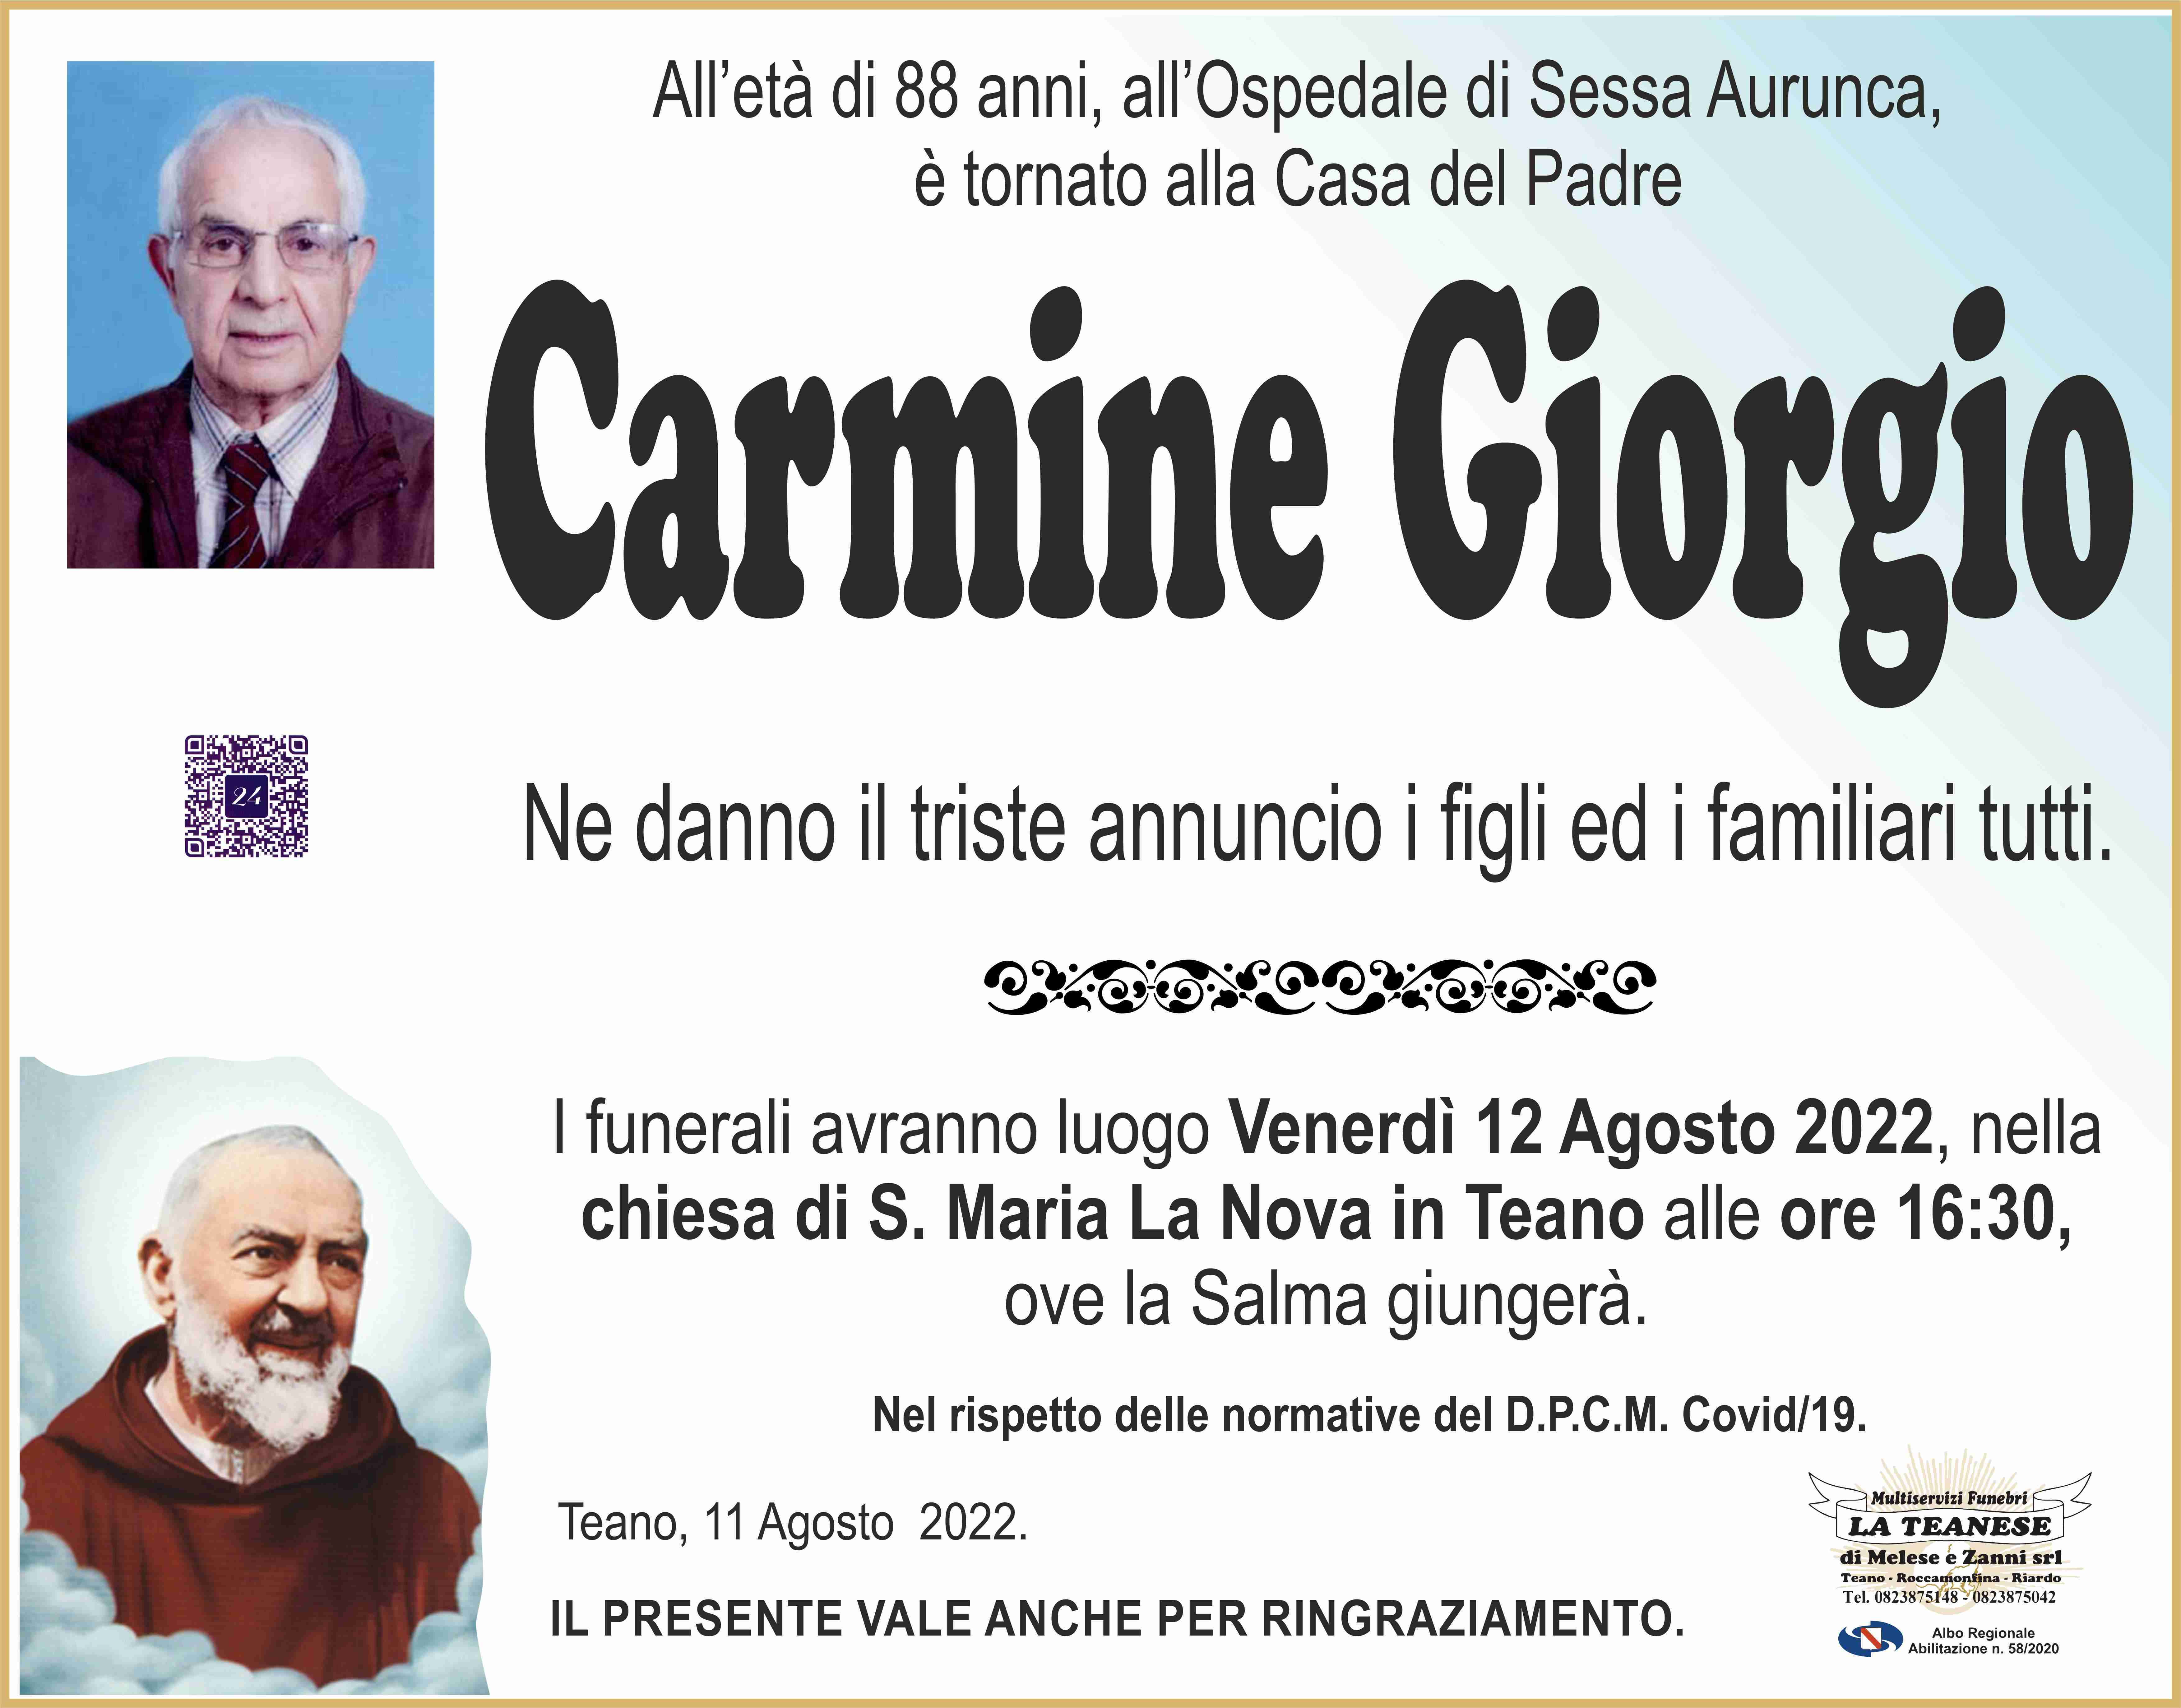 Carmine Giorgio